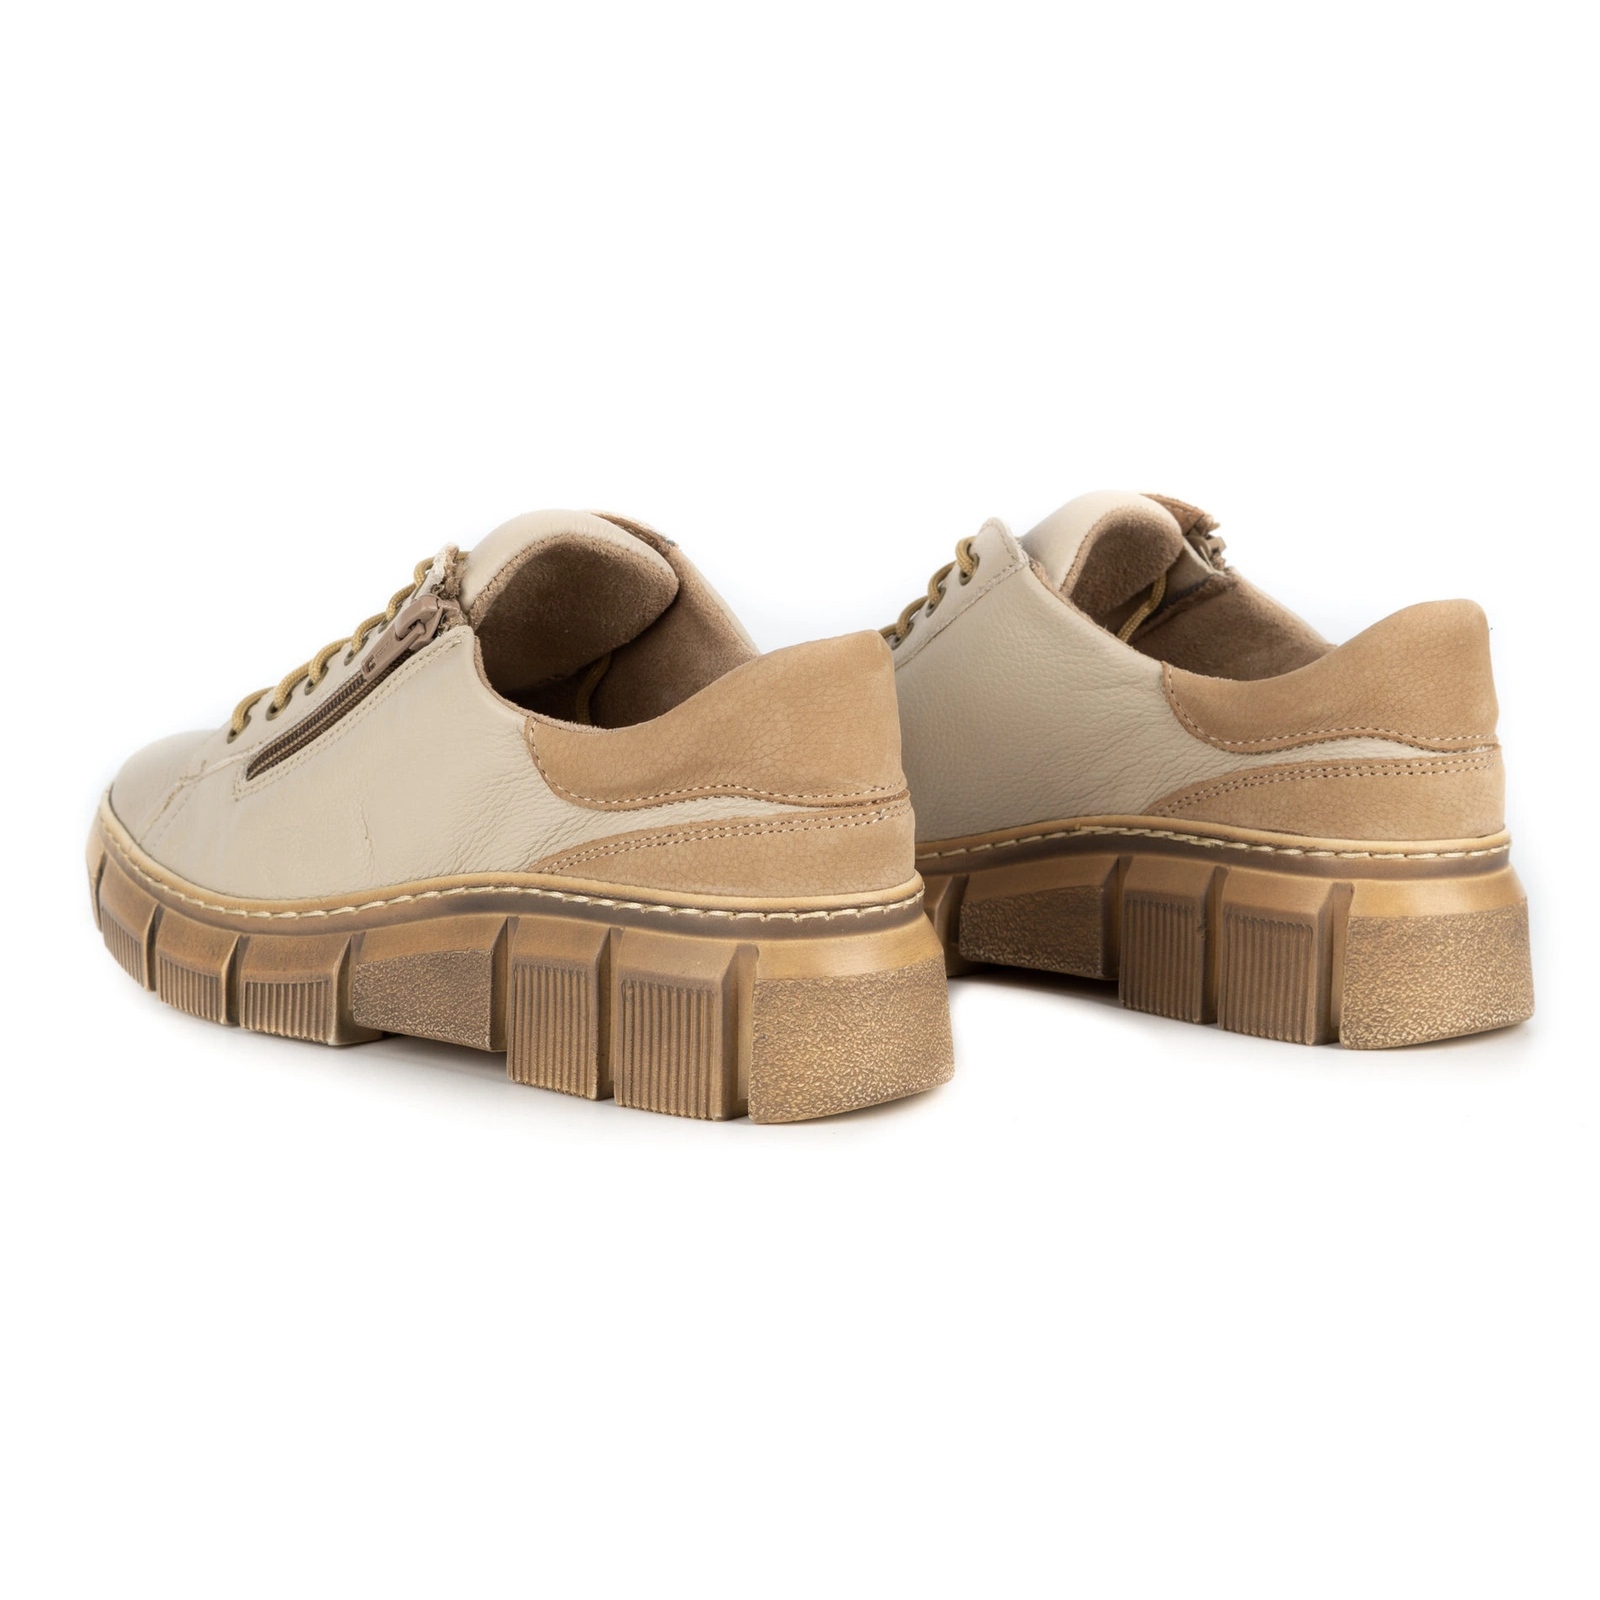 WASAK Women's Shoes Leather Sneakers 0663W Beige